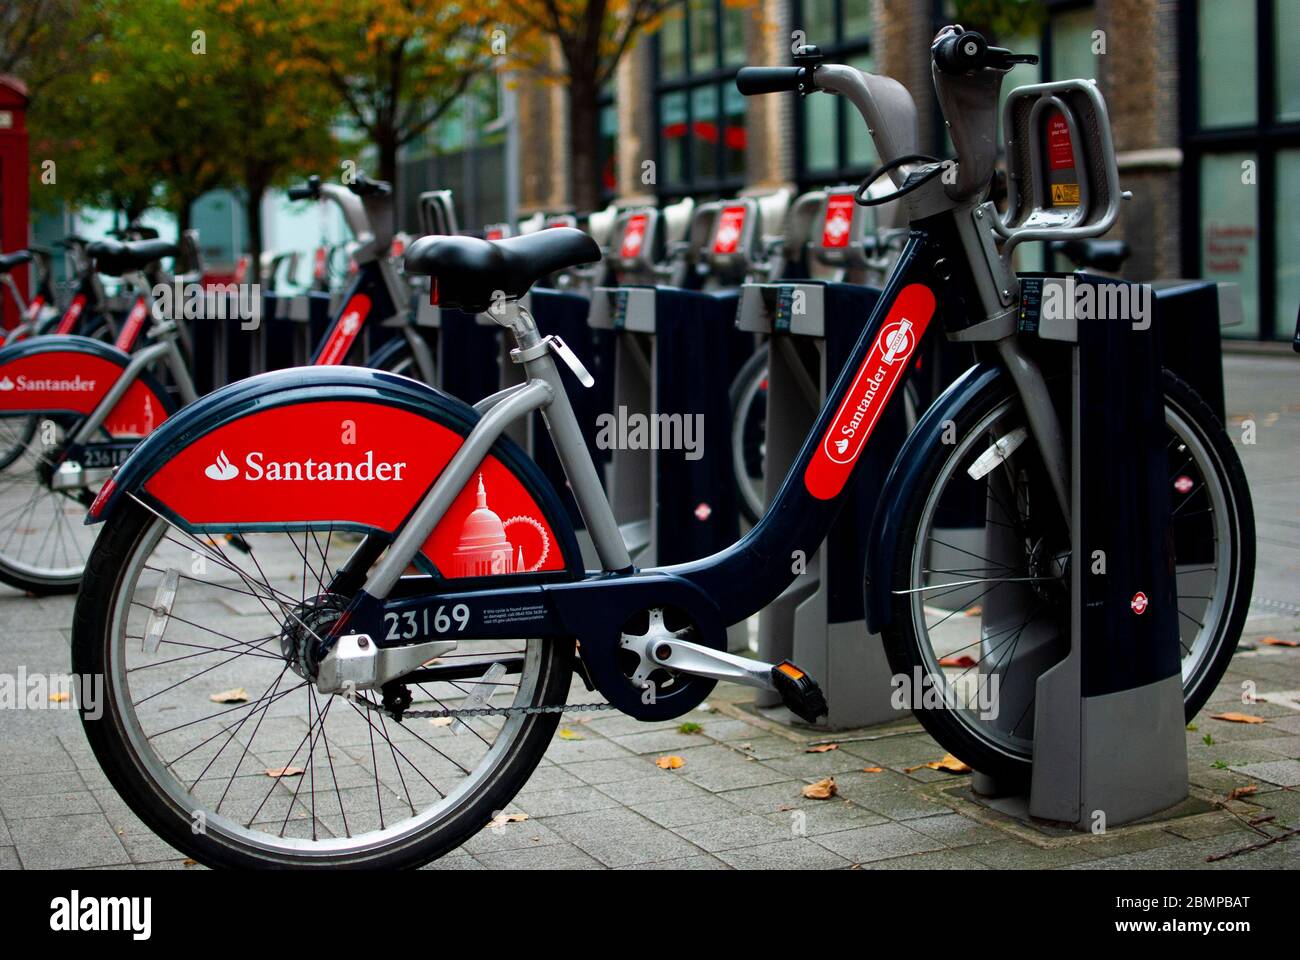 Una bicicletta a marchio Santander da noleggiare attraccata su una strada londinese come parte del sistema di condivisione delle biciclette della città. Foto Stock